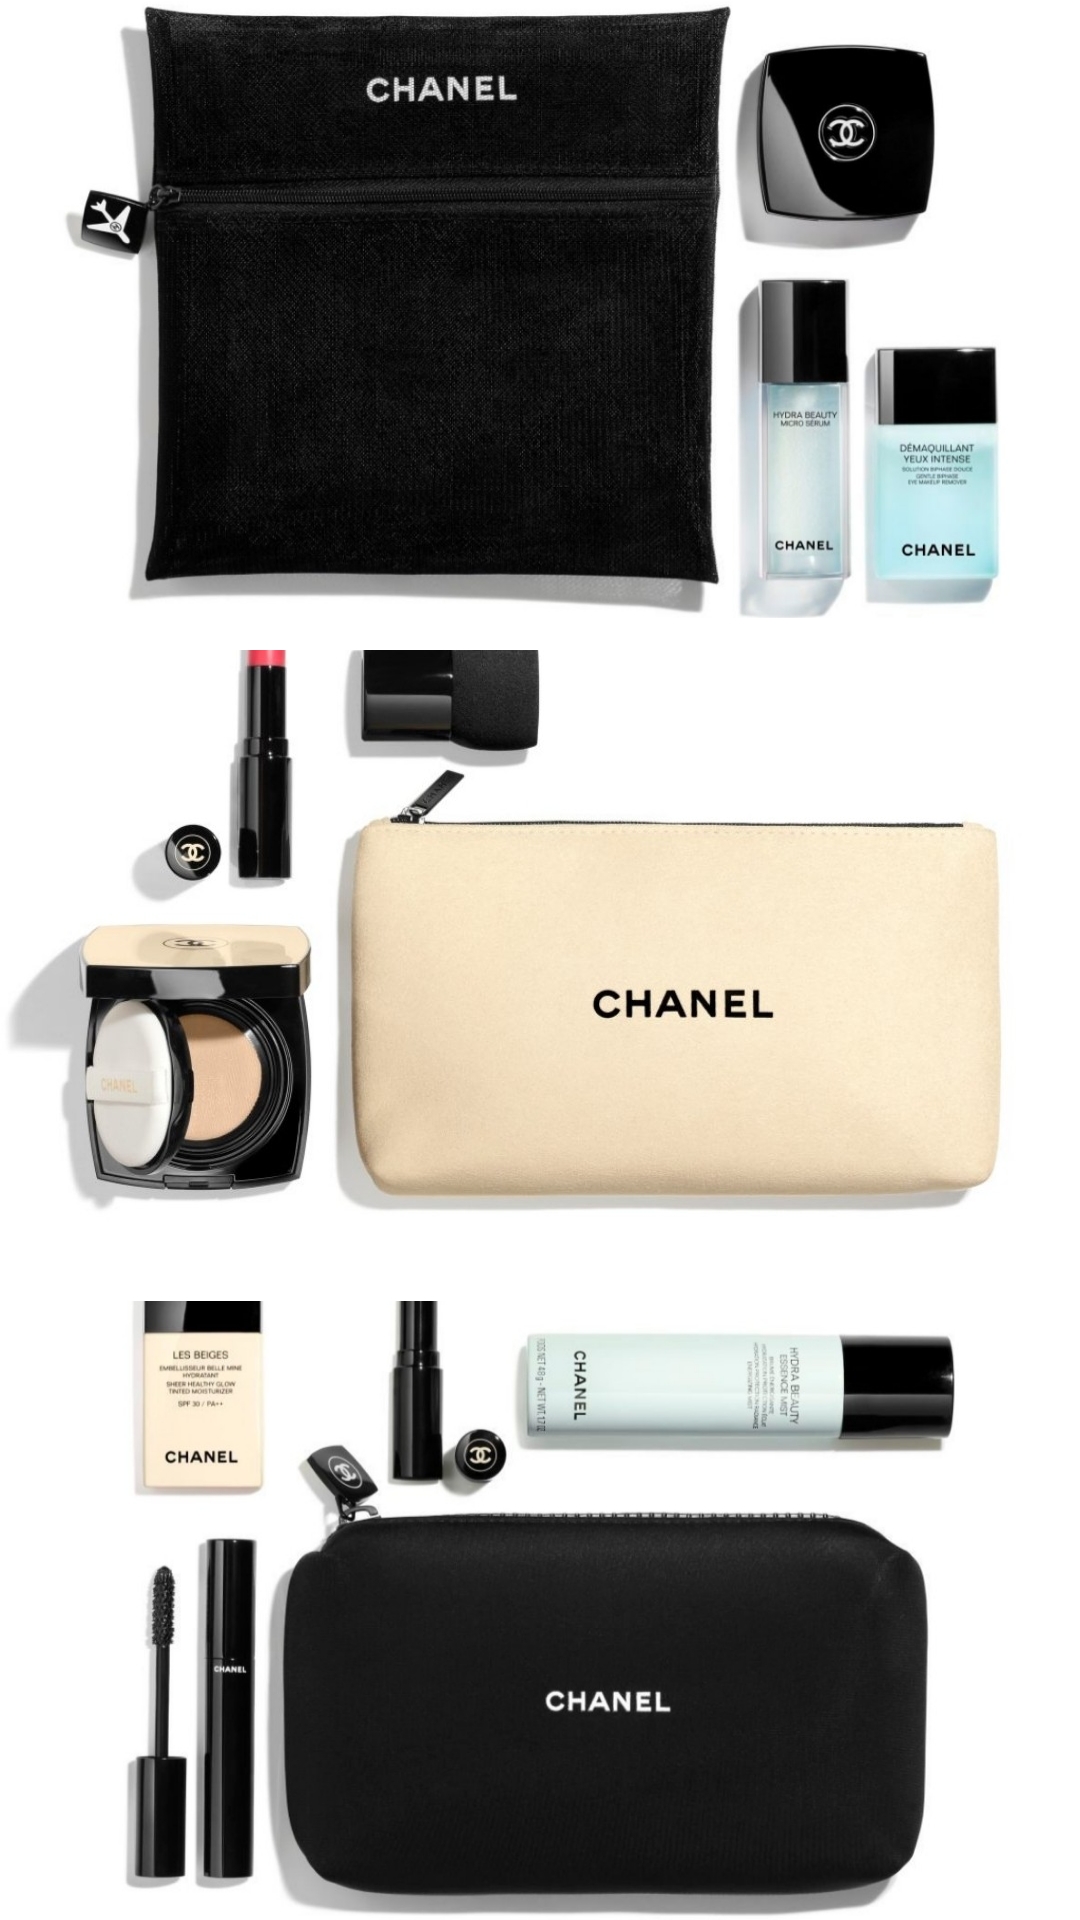 chanel makeup bag free gift